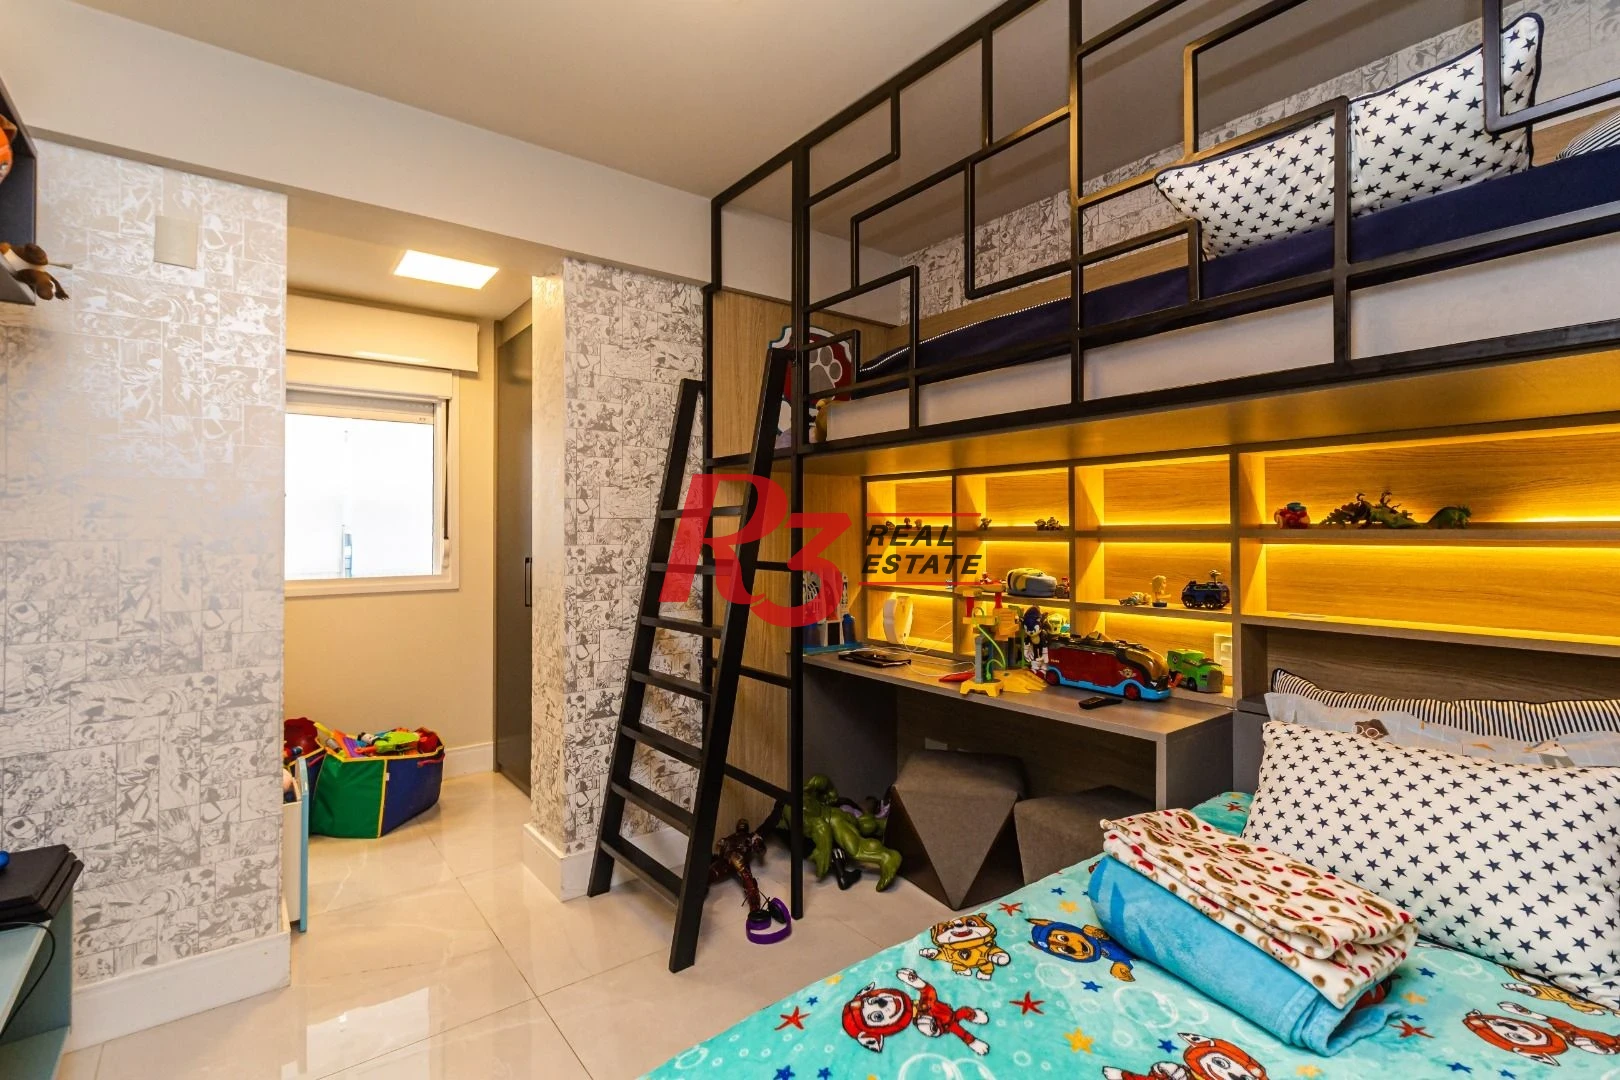 Apartamento Garden com 4 dormitórios à venda, 300 m² por R$ 4.300.000,00 - Vila Rica - Santos/SP